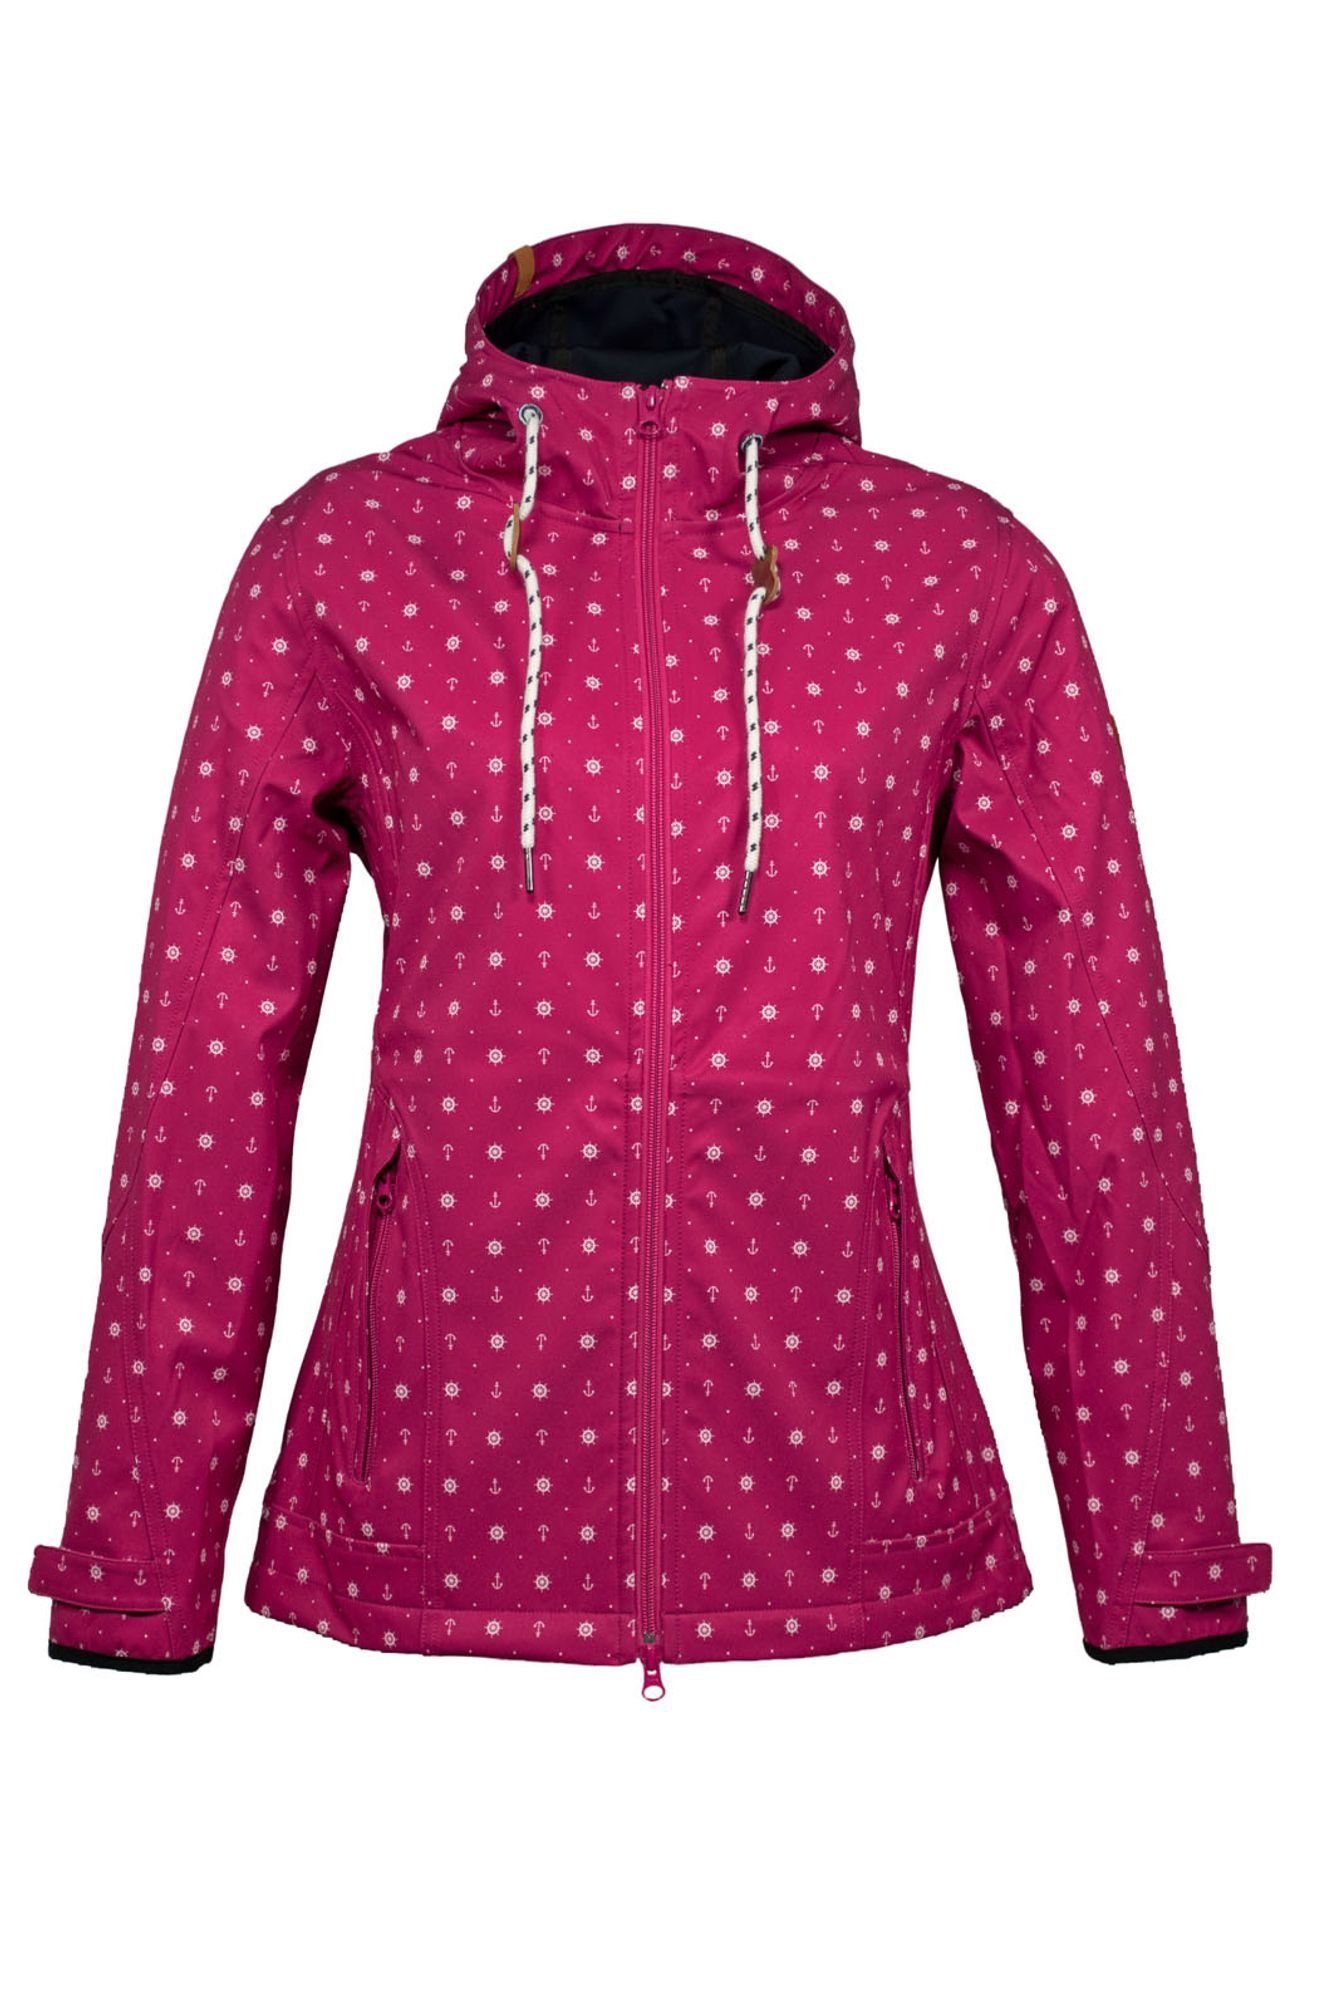 Brigg Softshelljacke Damen Jacke Ultra light mit Allover-Print Maritim -  Sehr leichte Outdoor-Jacke wasserdicht winddicht online kaufen | OTTO